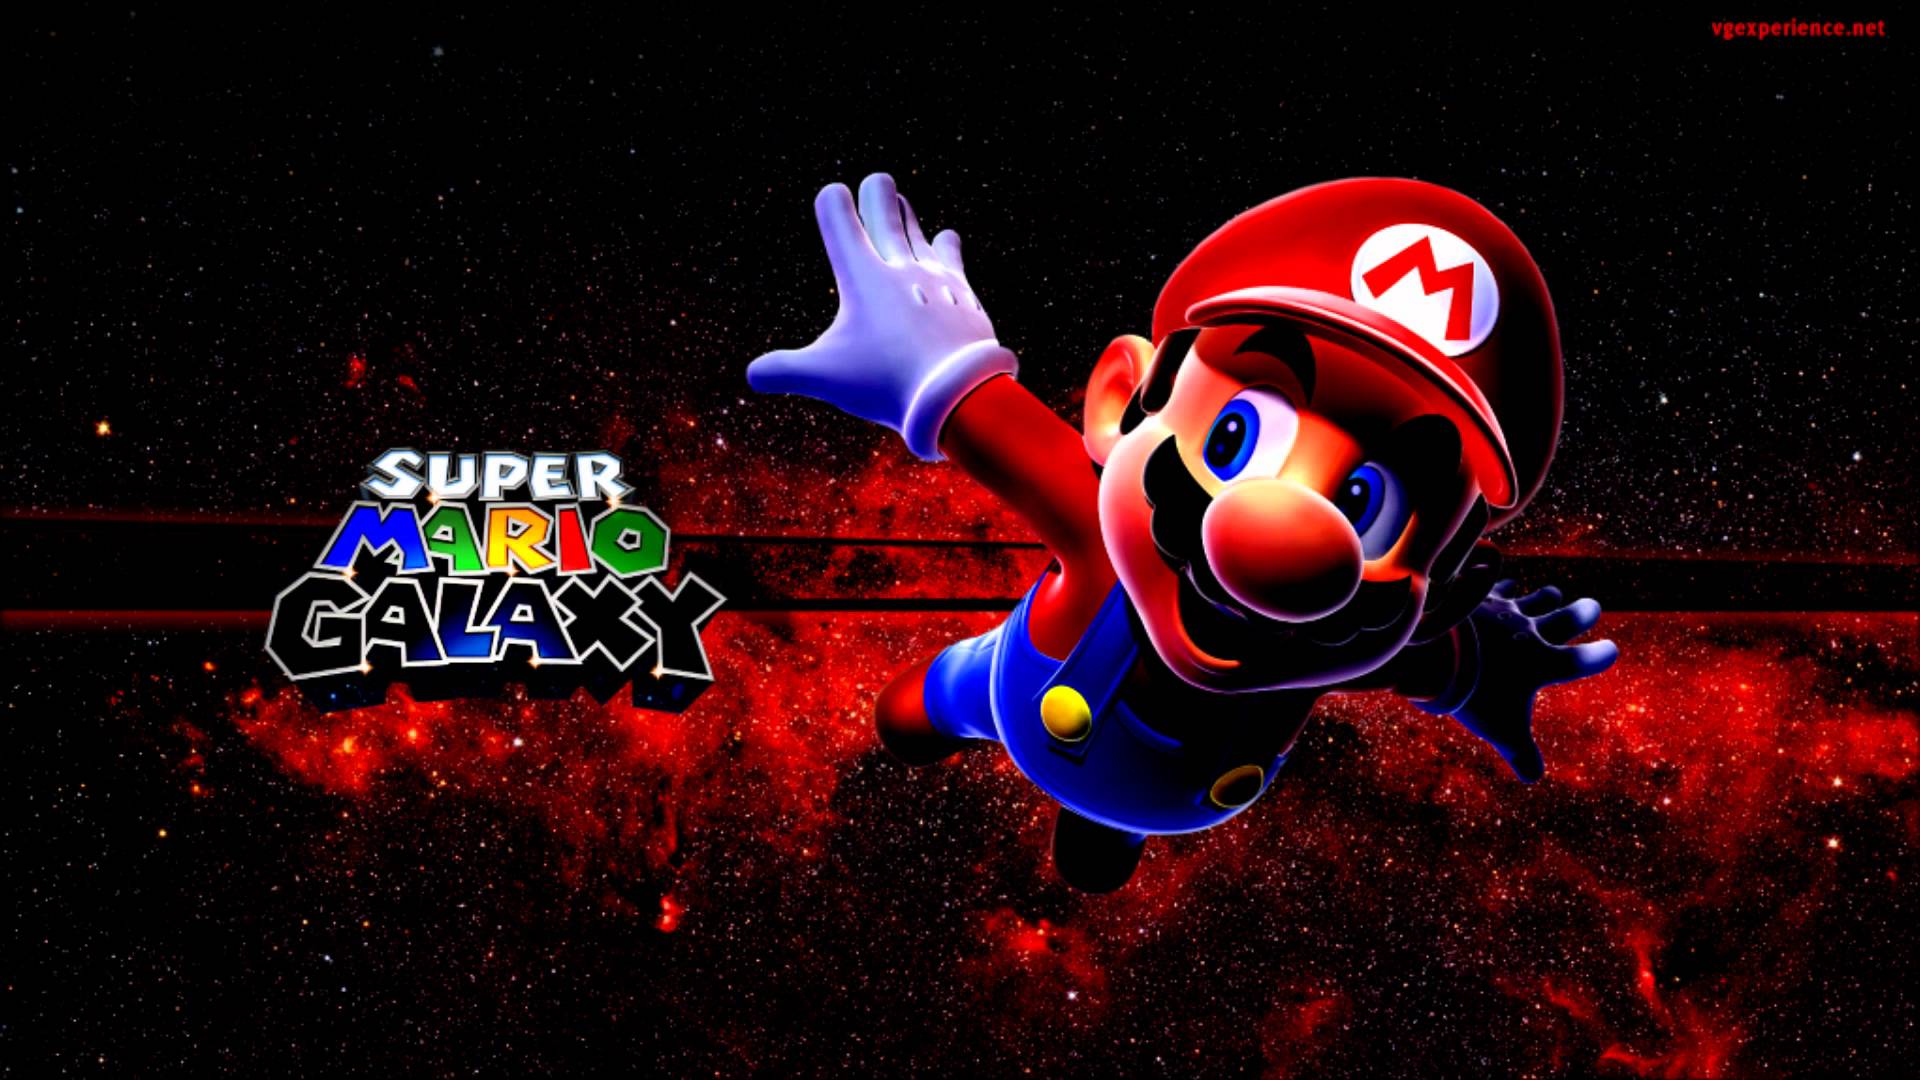 Super Mario Bros. Wii & Super Mario Galaxy 2 Wallpaper -HD